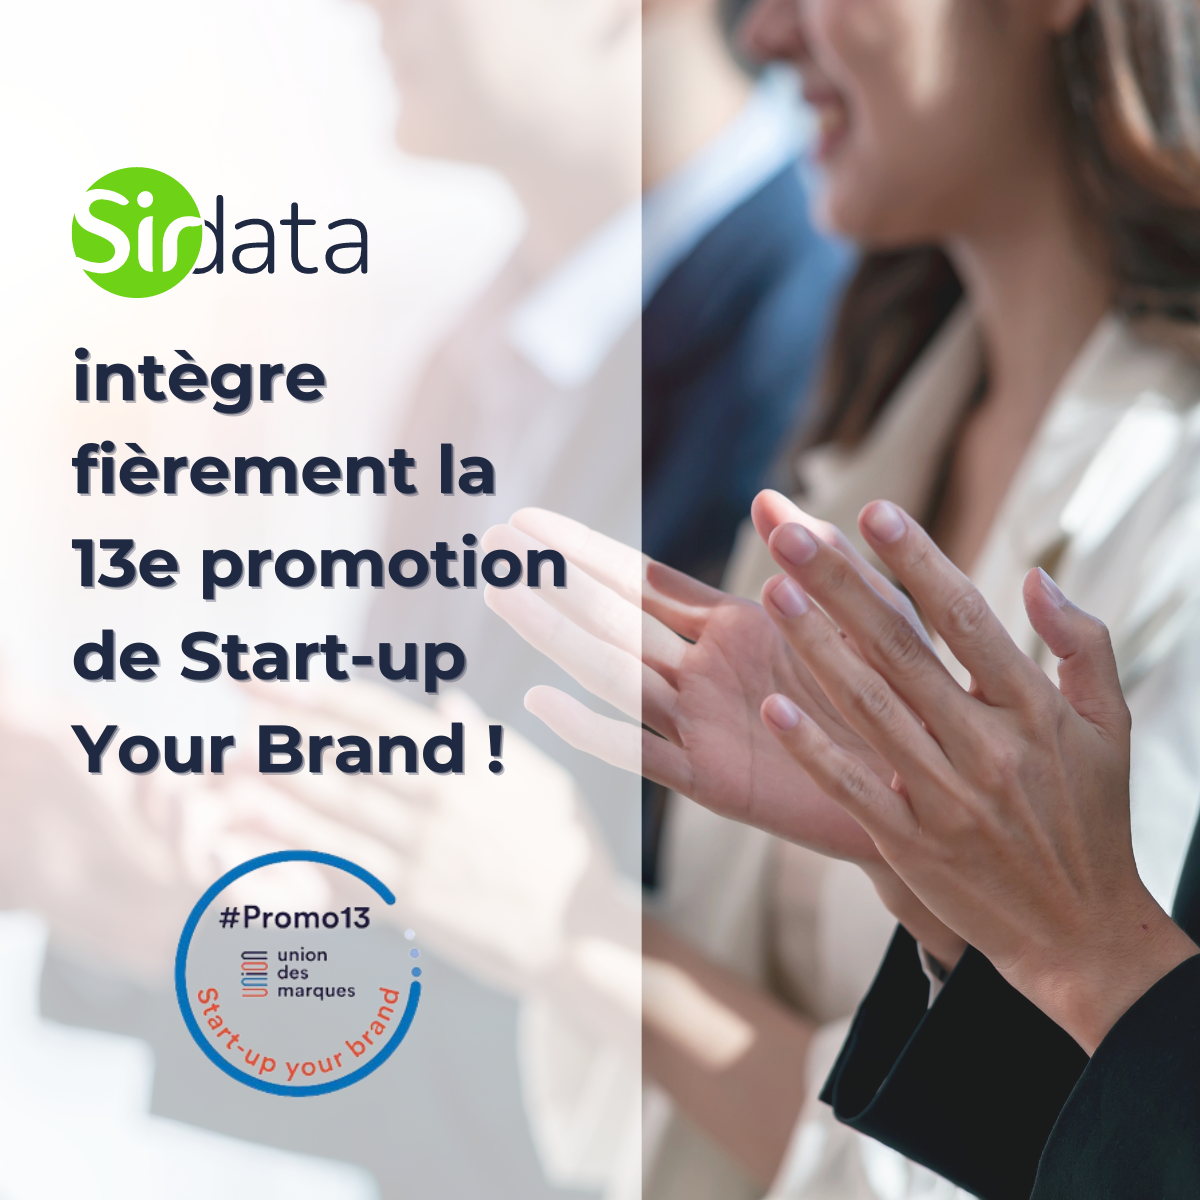 Sirdata intègre la 13e promotion de Start-up Your Brand !